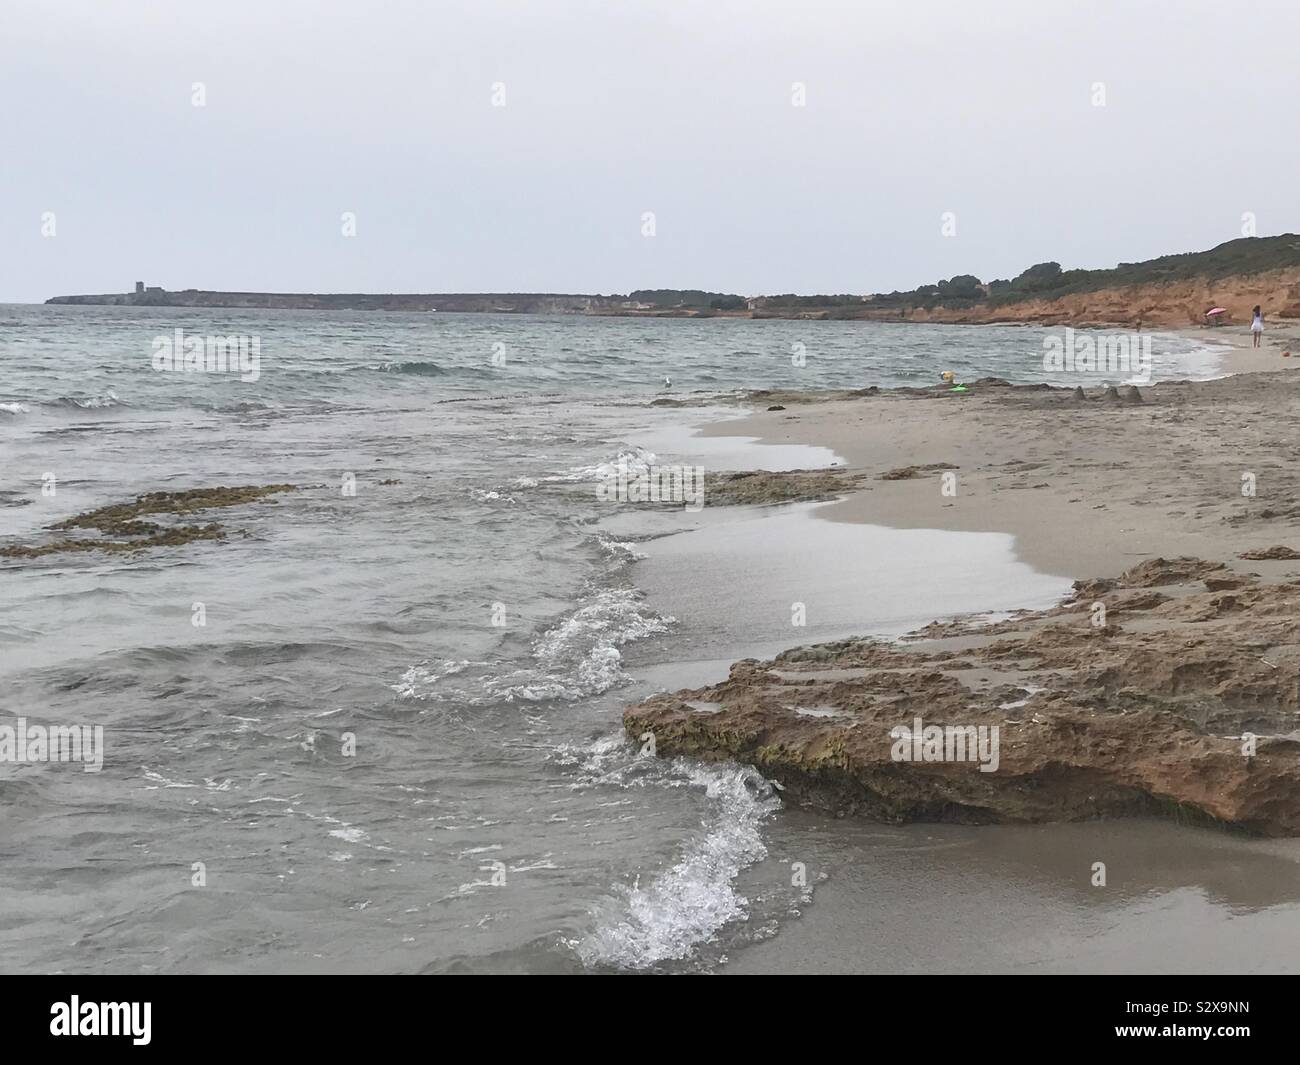 Sardinian beach Stock Photo